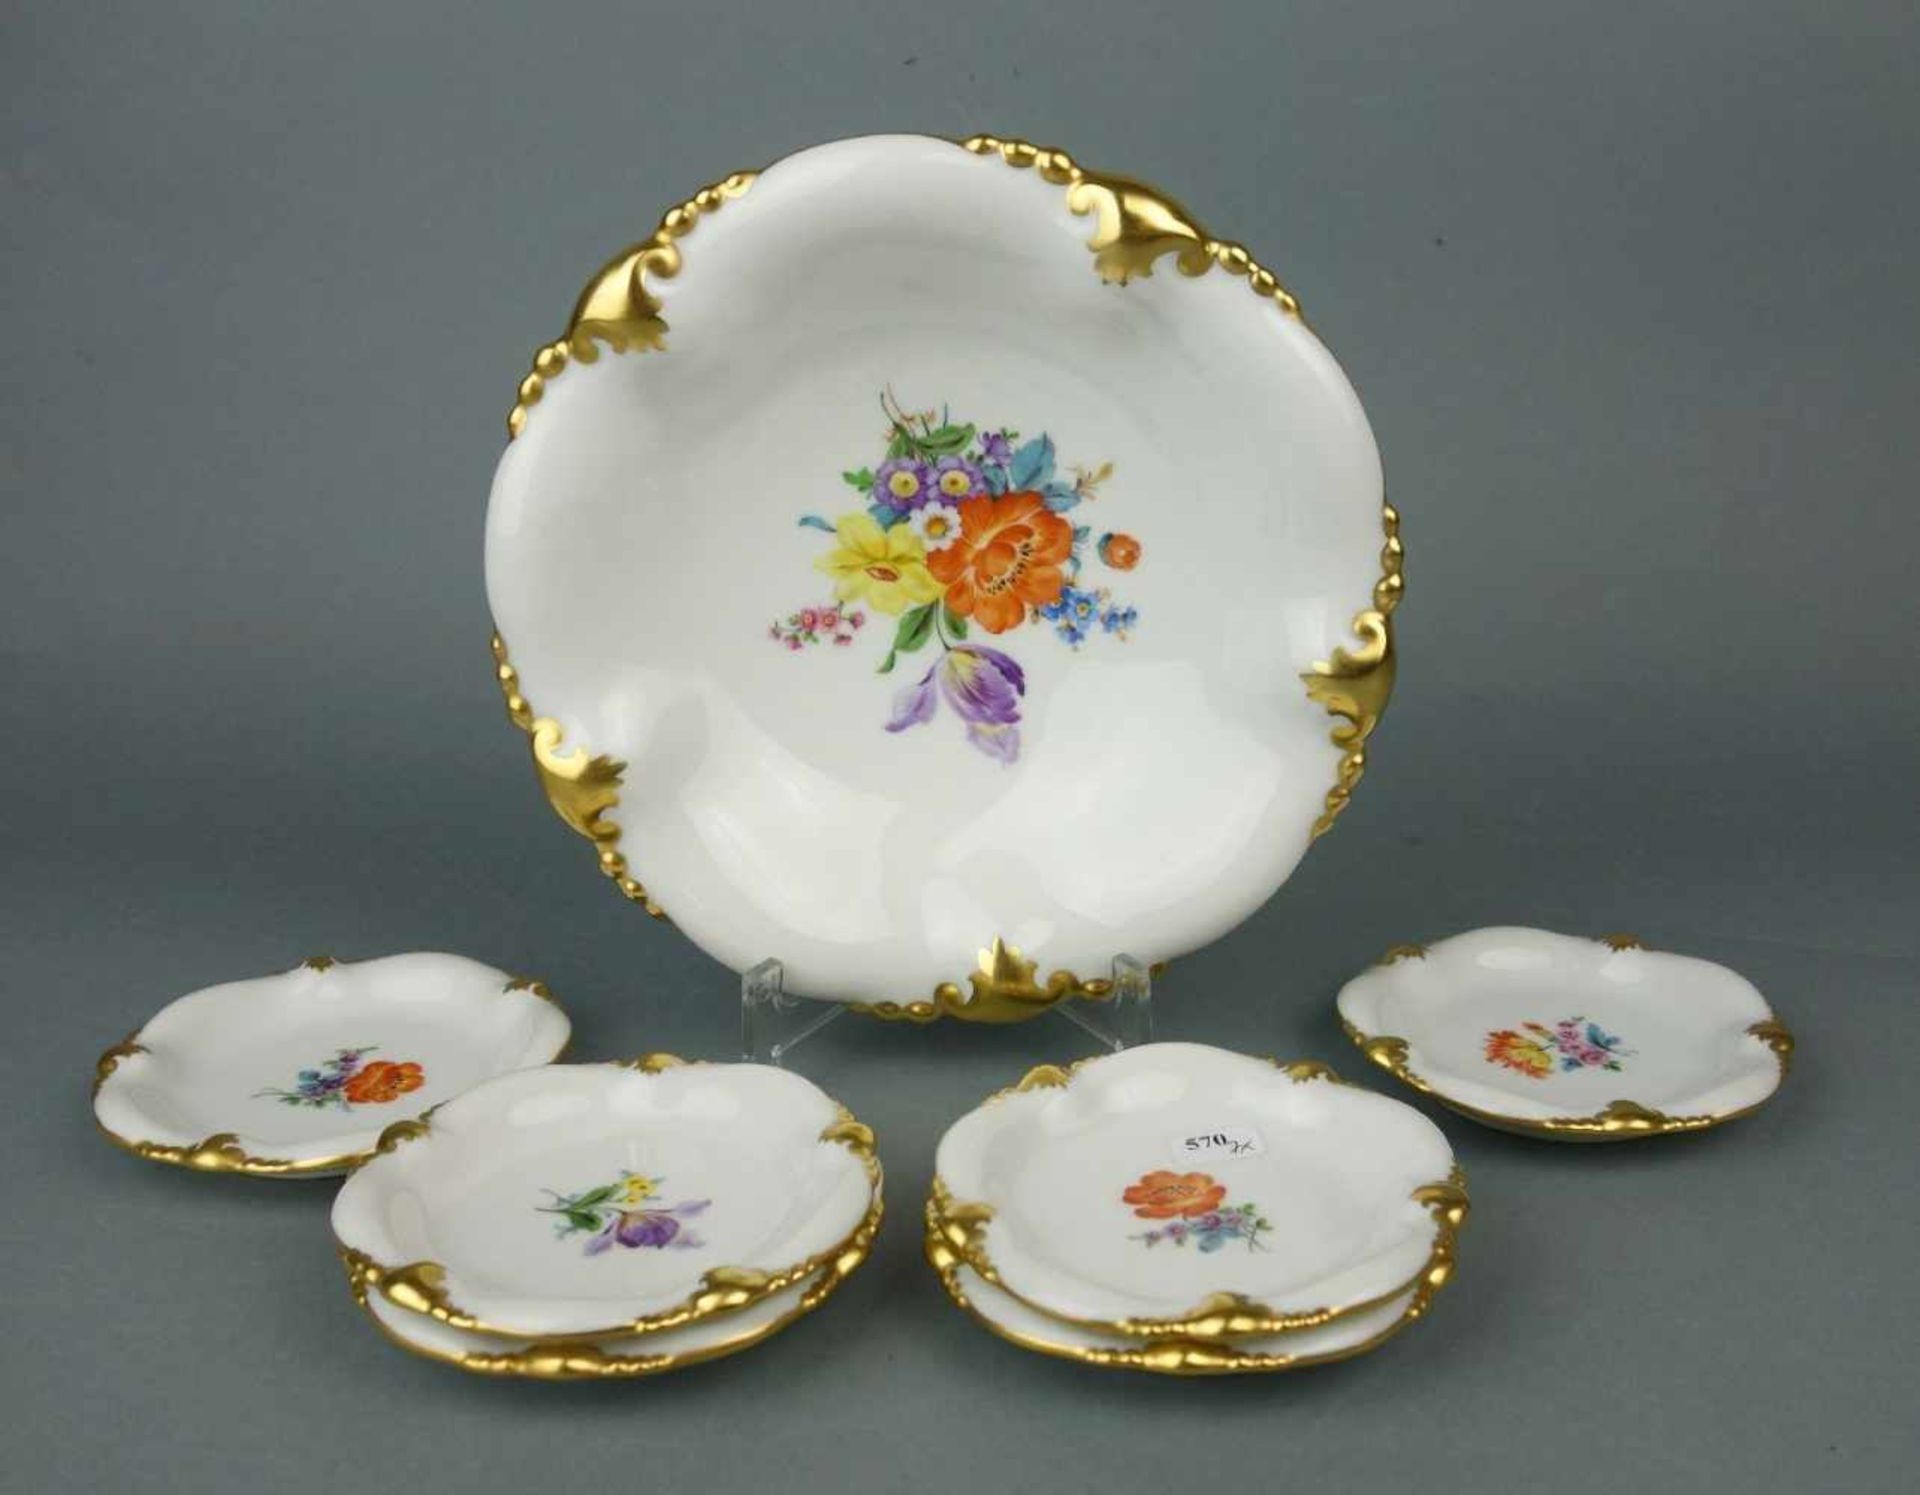 SCHALE UND 6 KONFEKTTELLER / bowl and plates, Porzellan Manufaktur C. M. Hutschenreuther - - Image 2 of 3